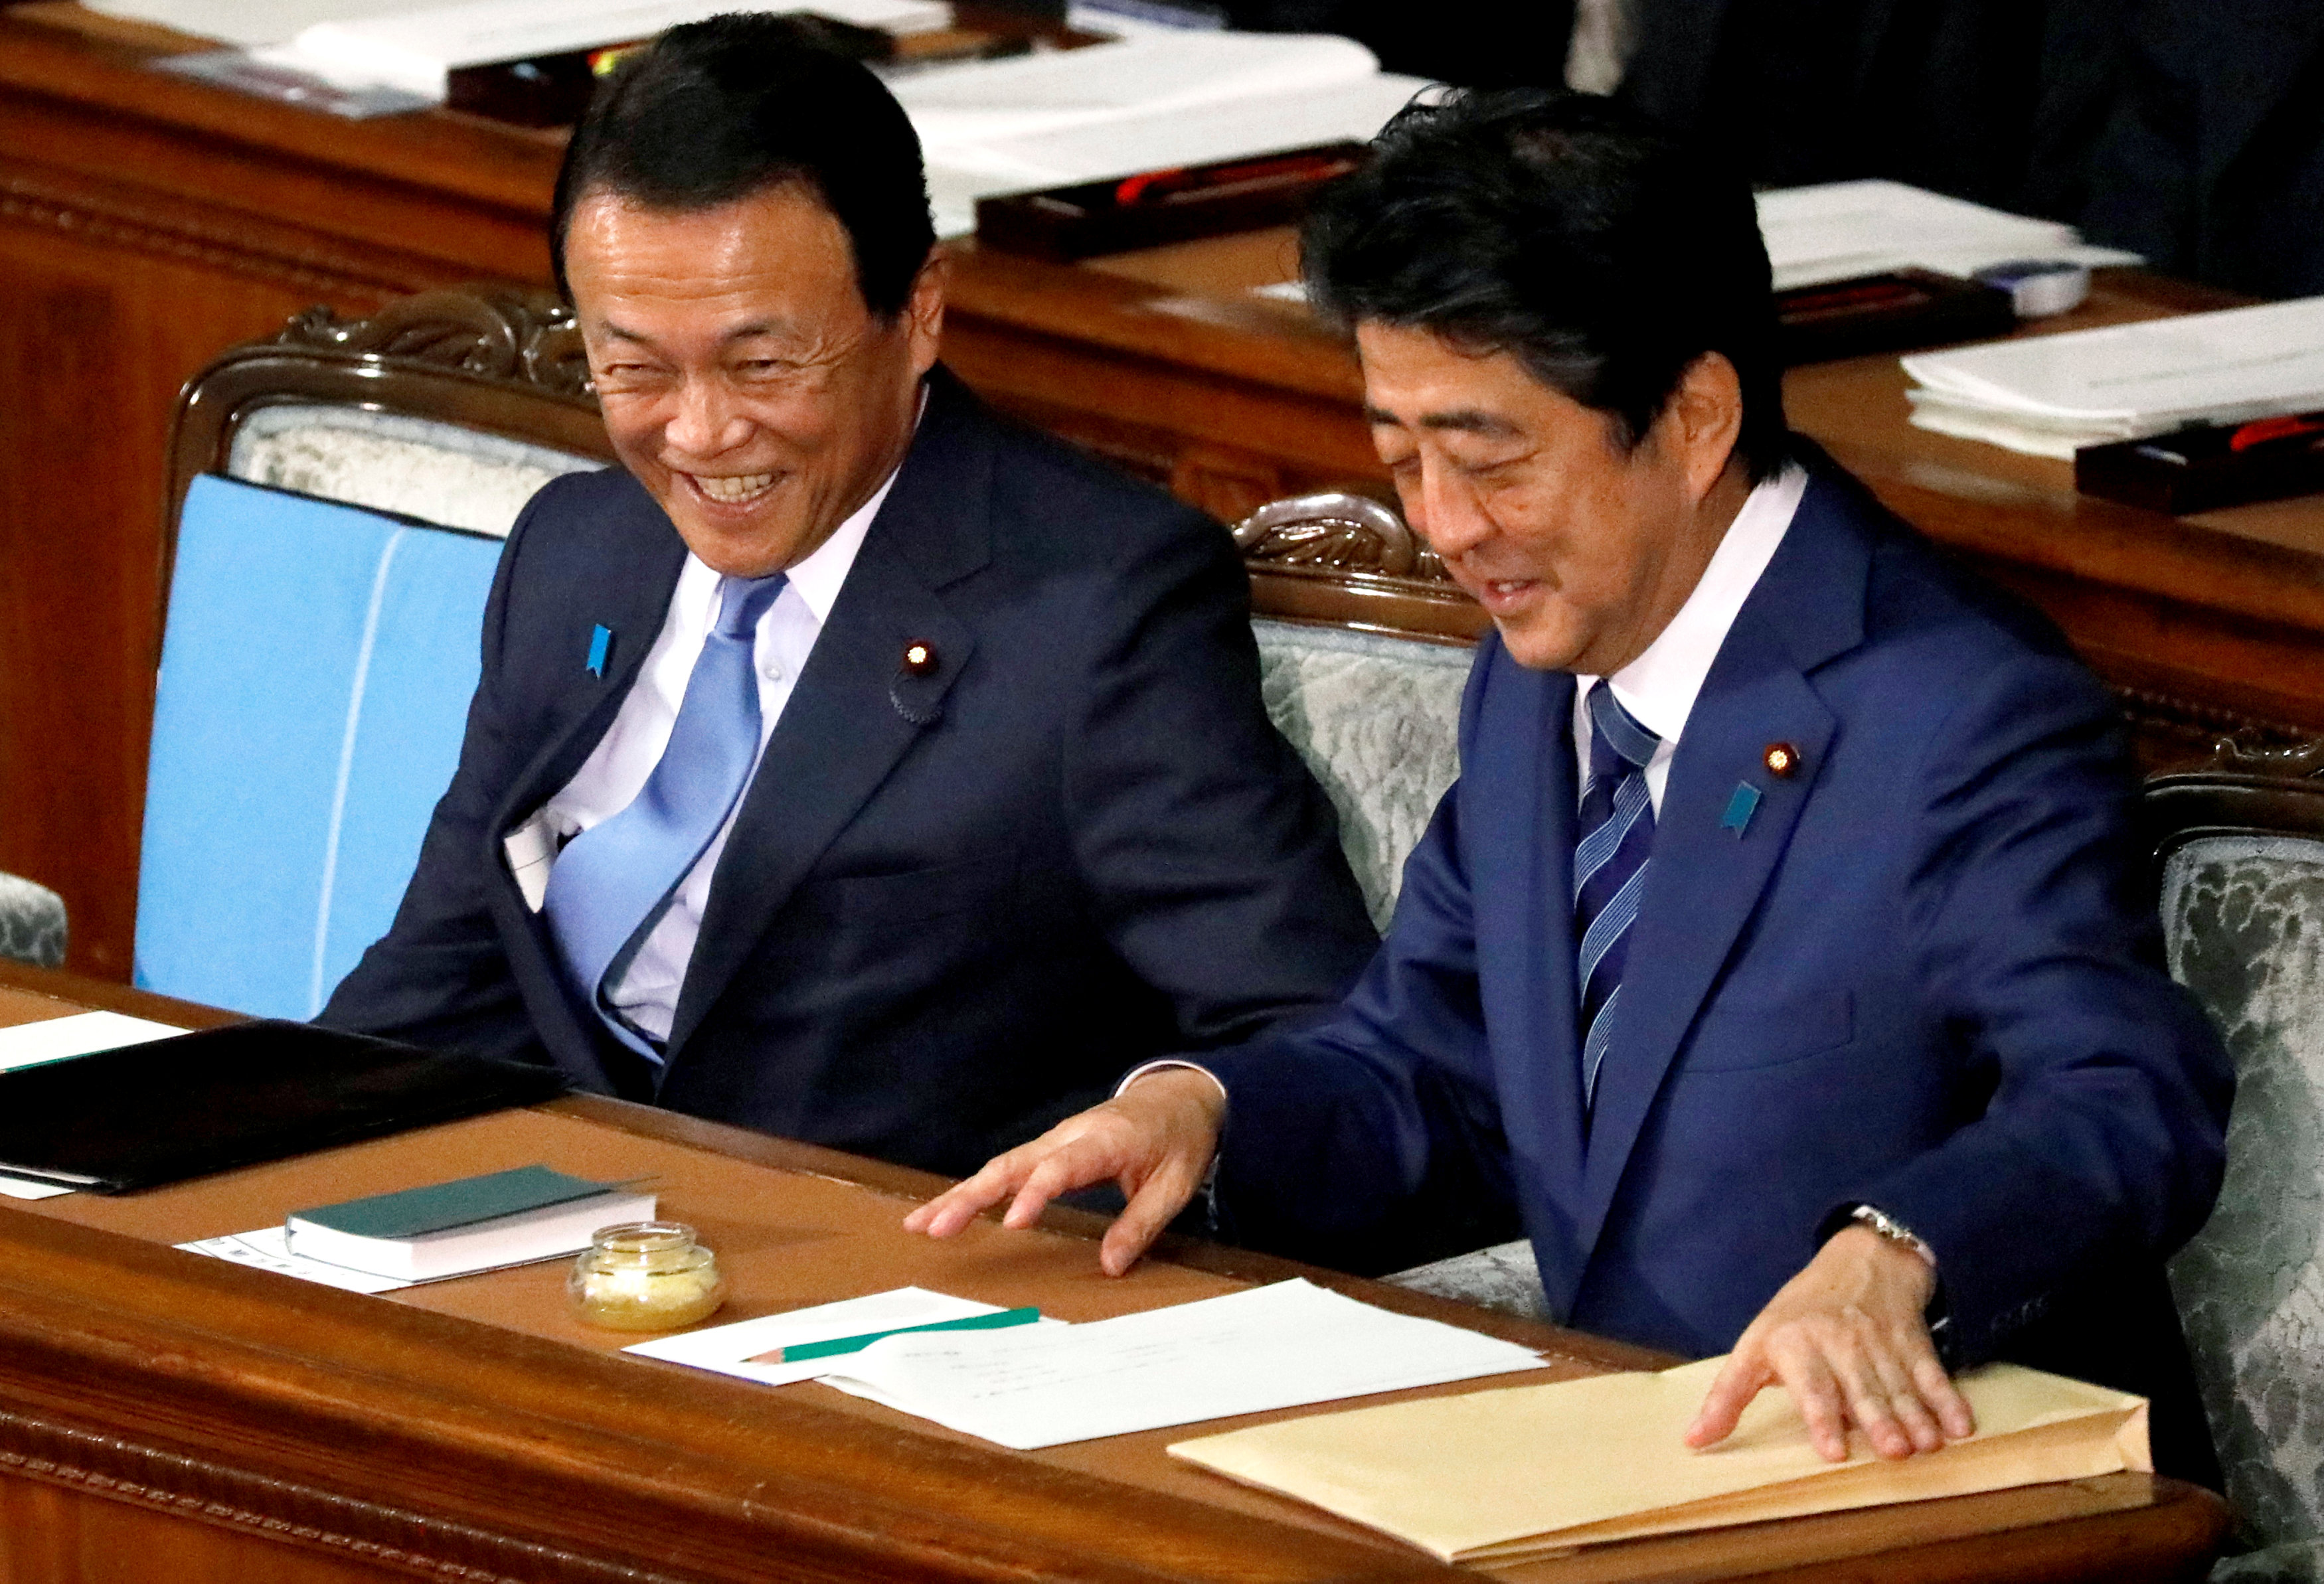 حديث باسم بين رئيس وزراء اليابان ونائبه